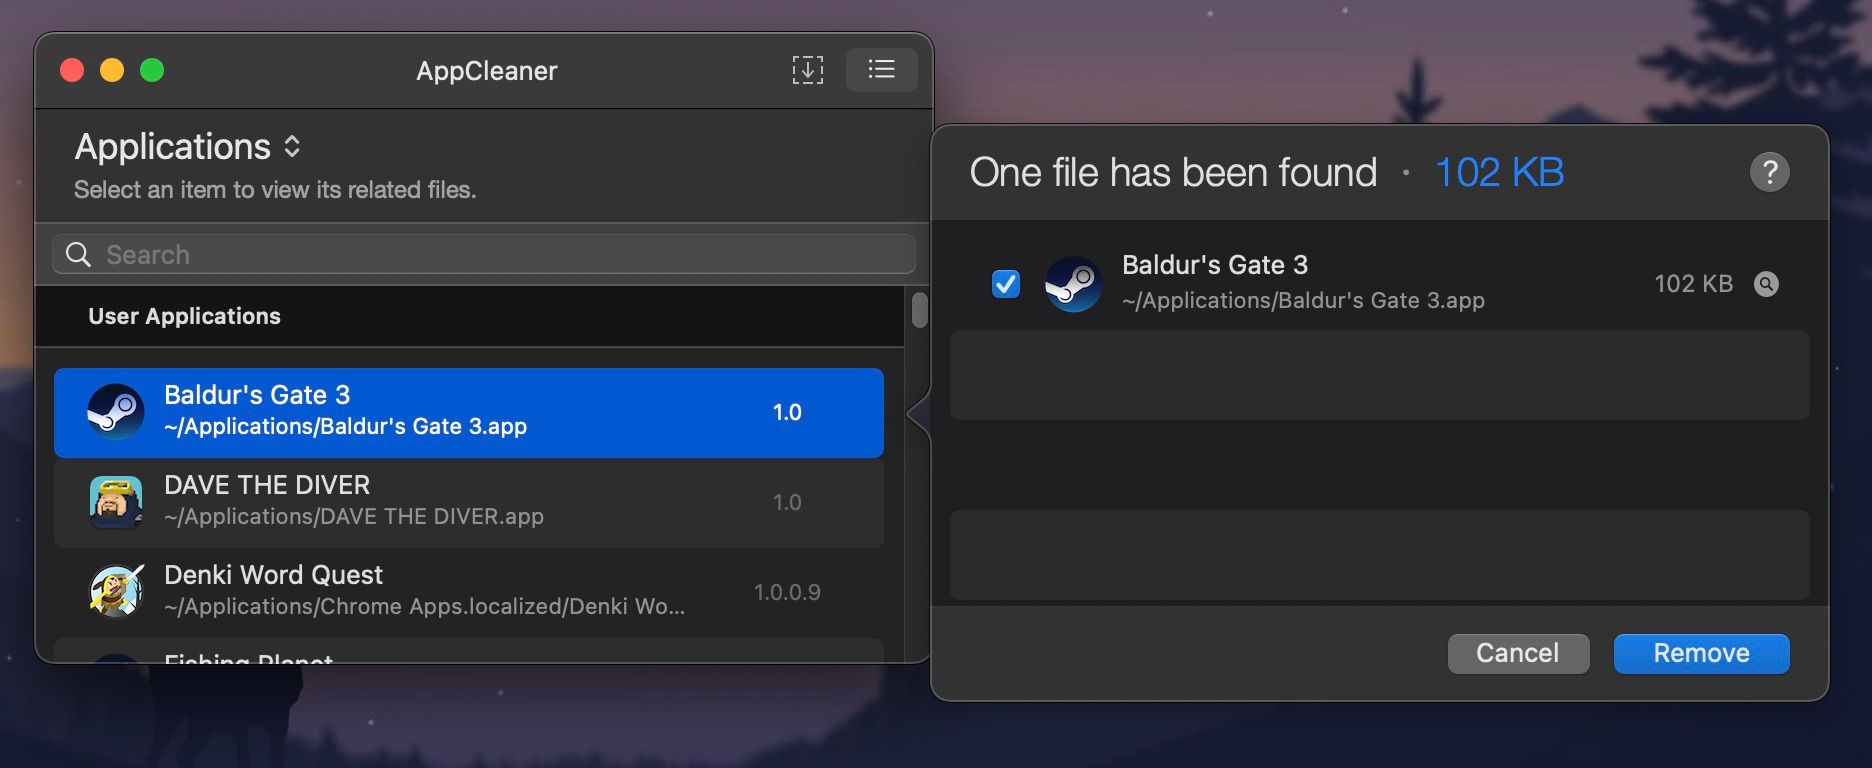 Aplicativo AppCleaner com opção para remover Baldur's Gate 3